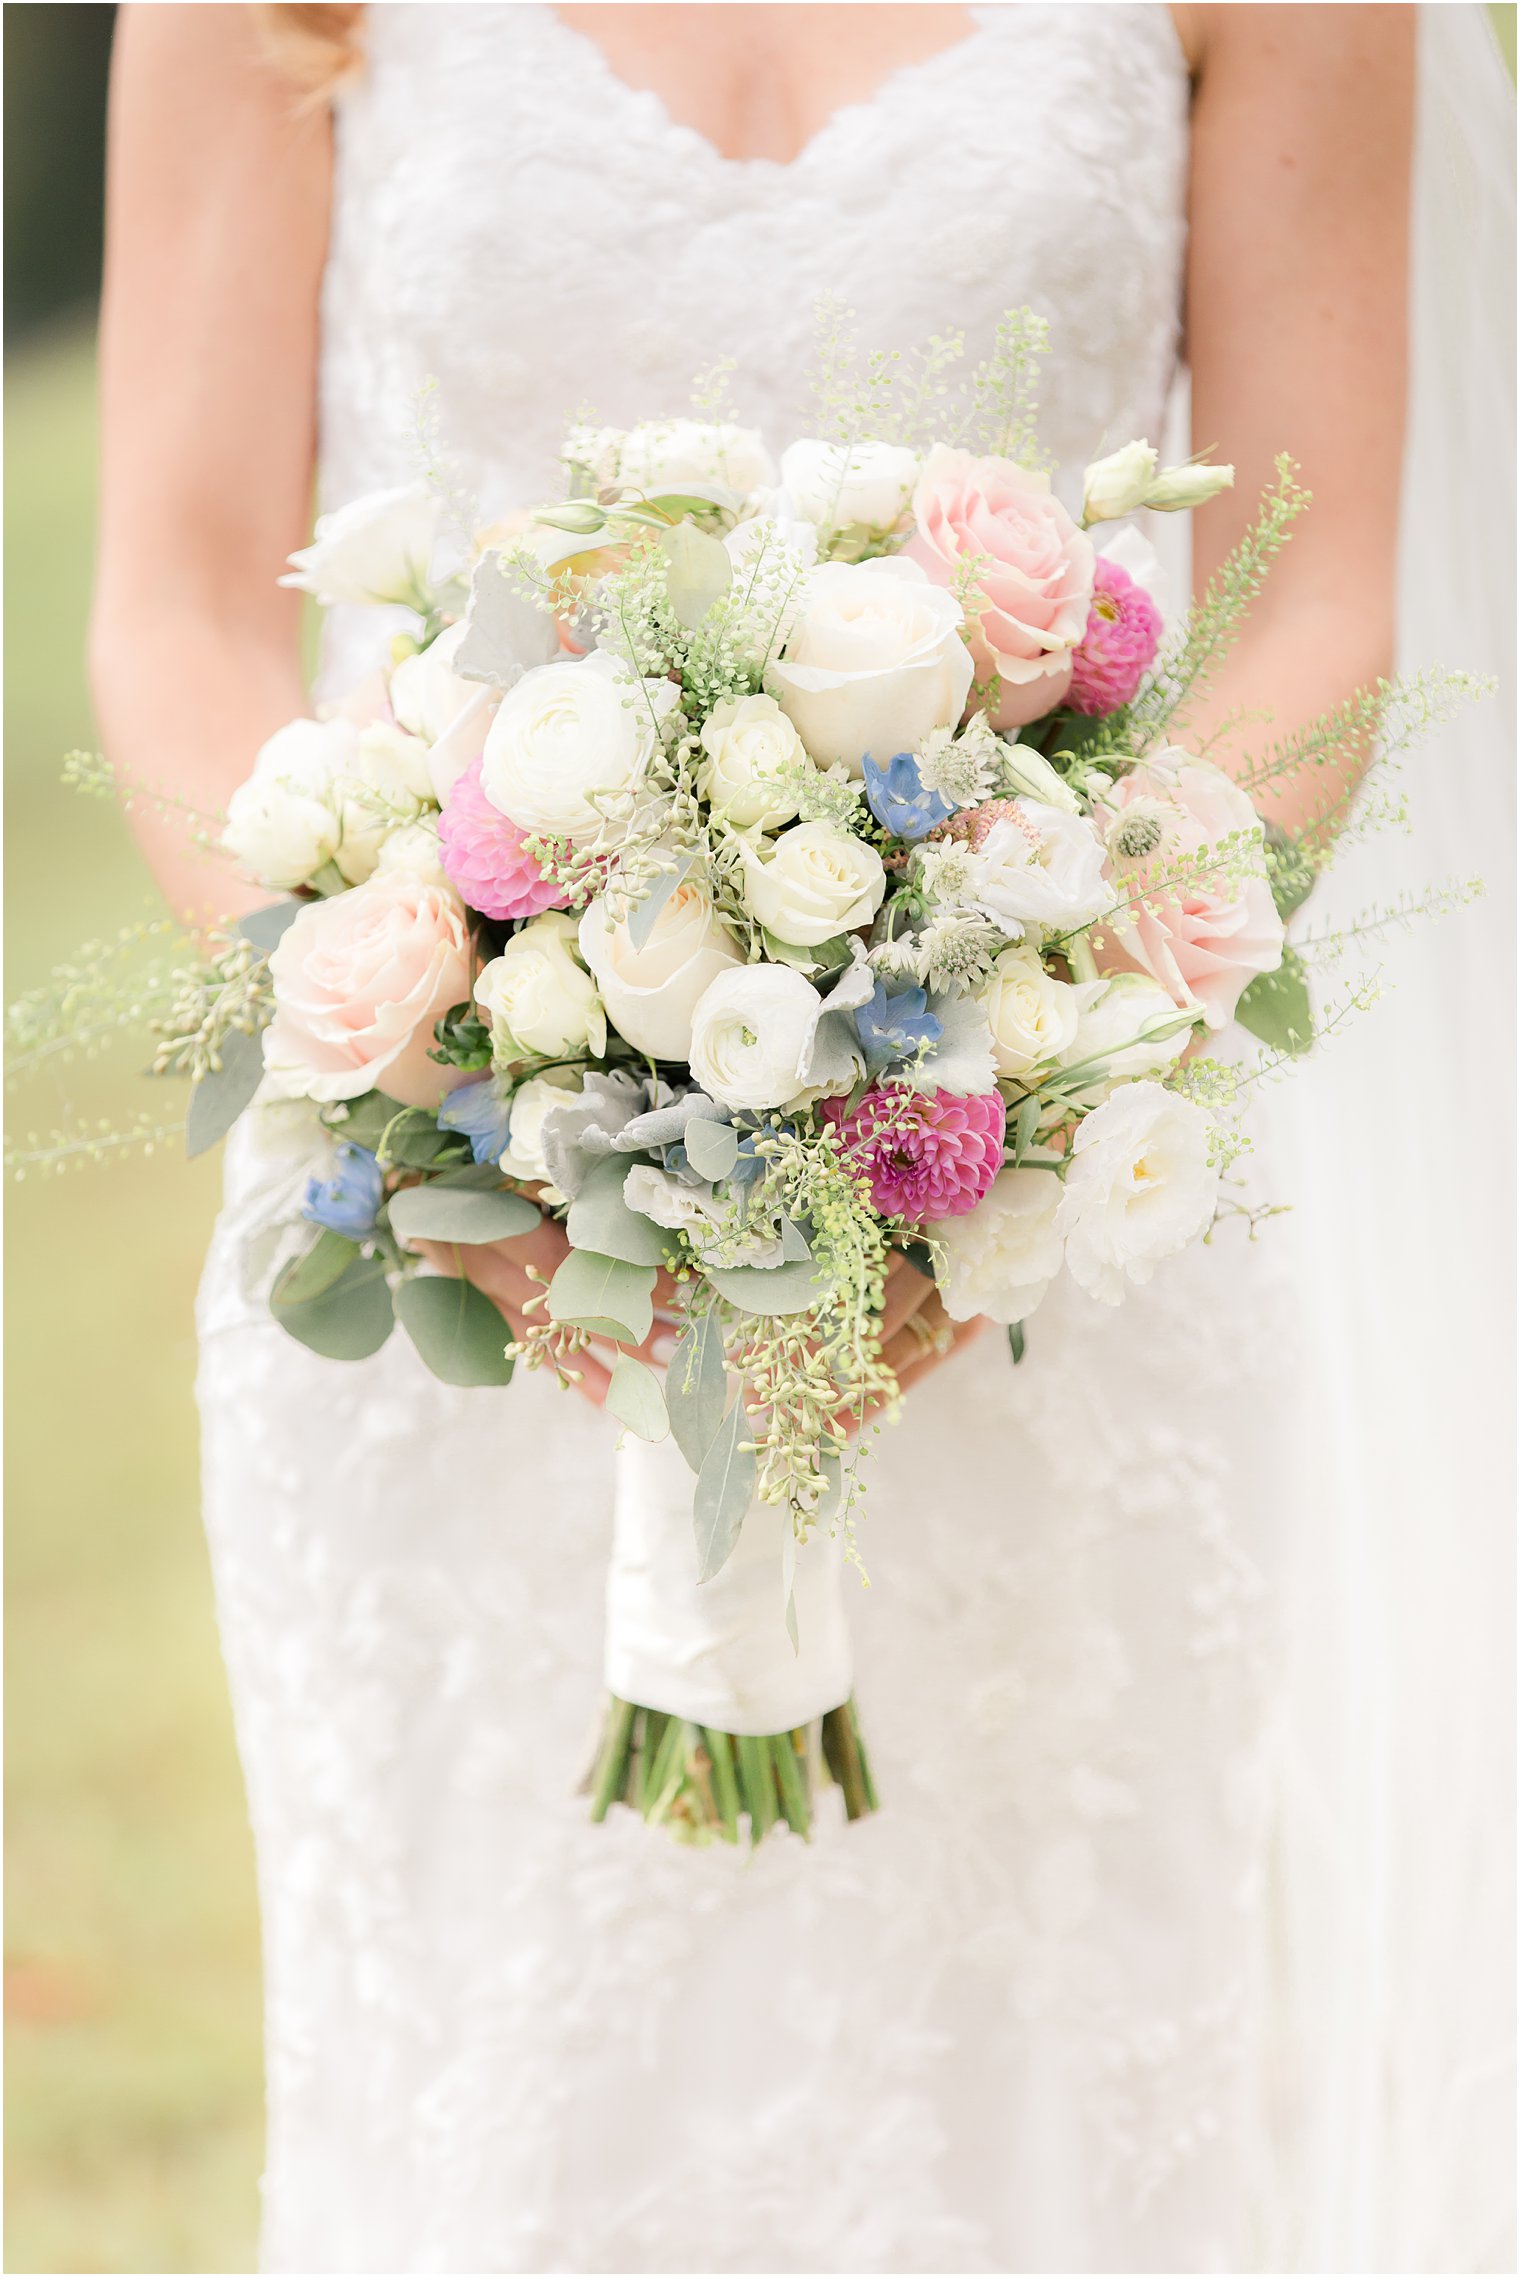 Bridal bouquet by Gig Morris Florist